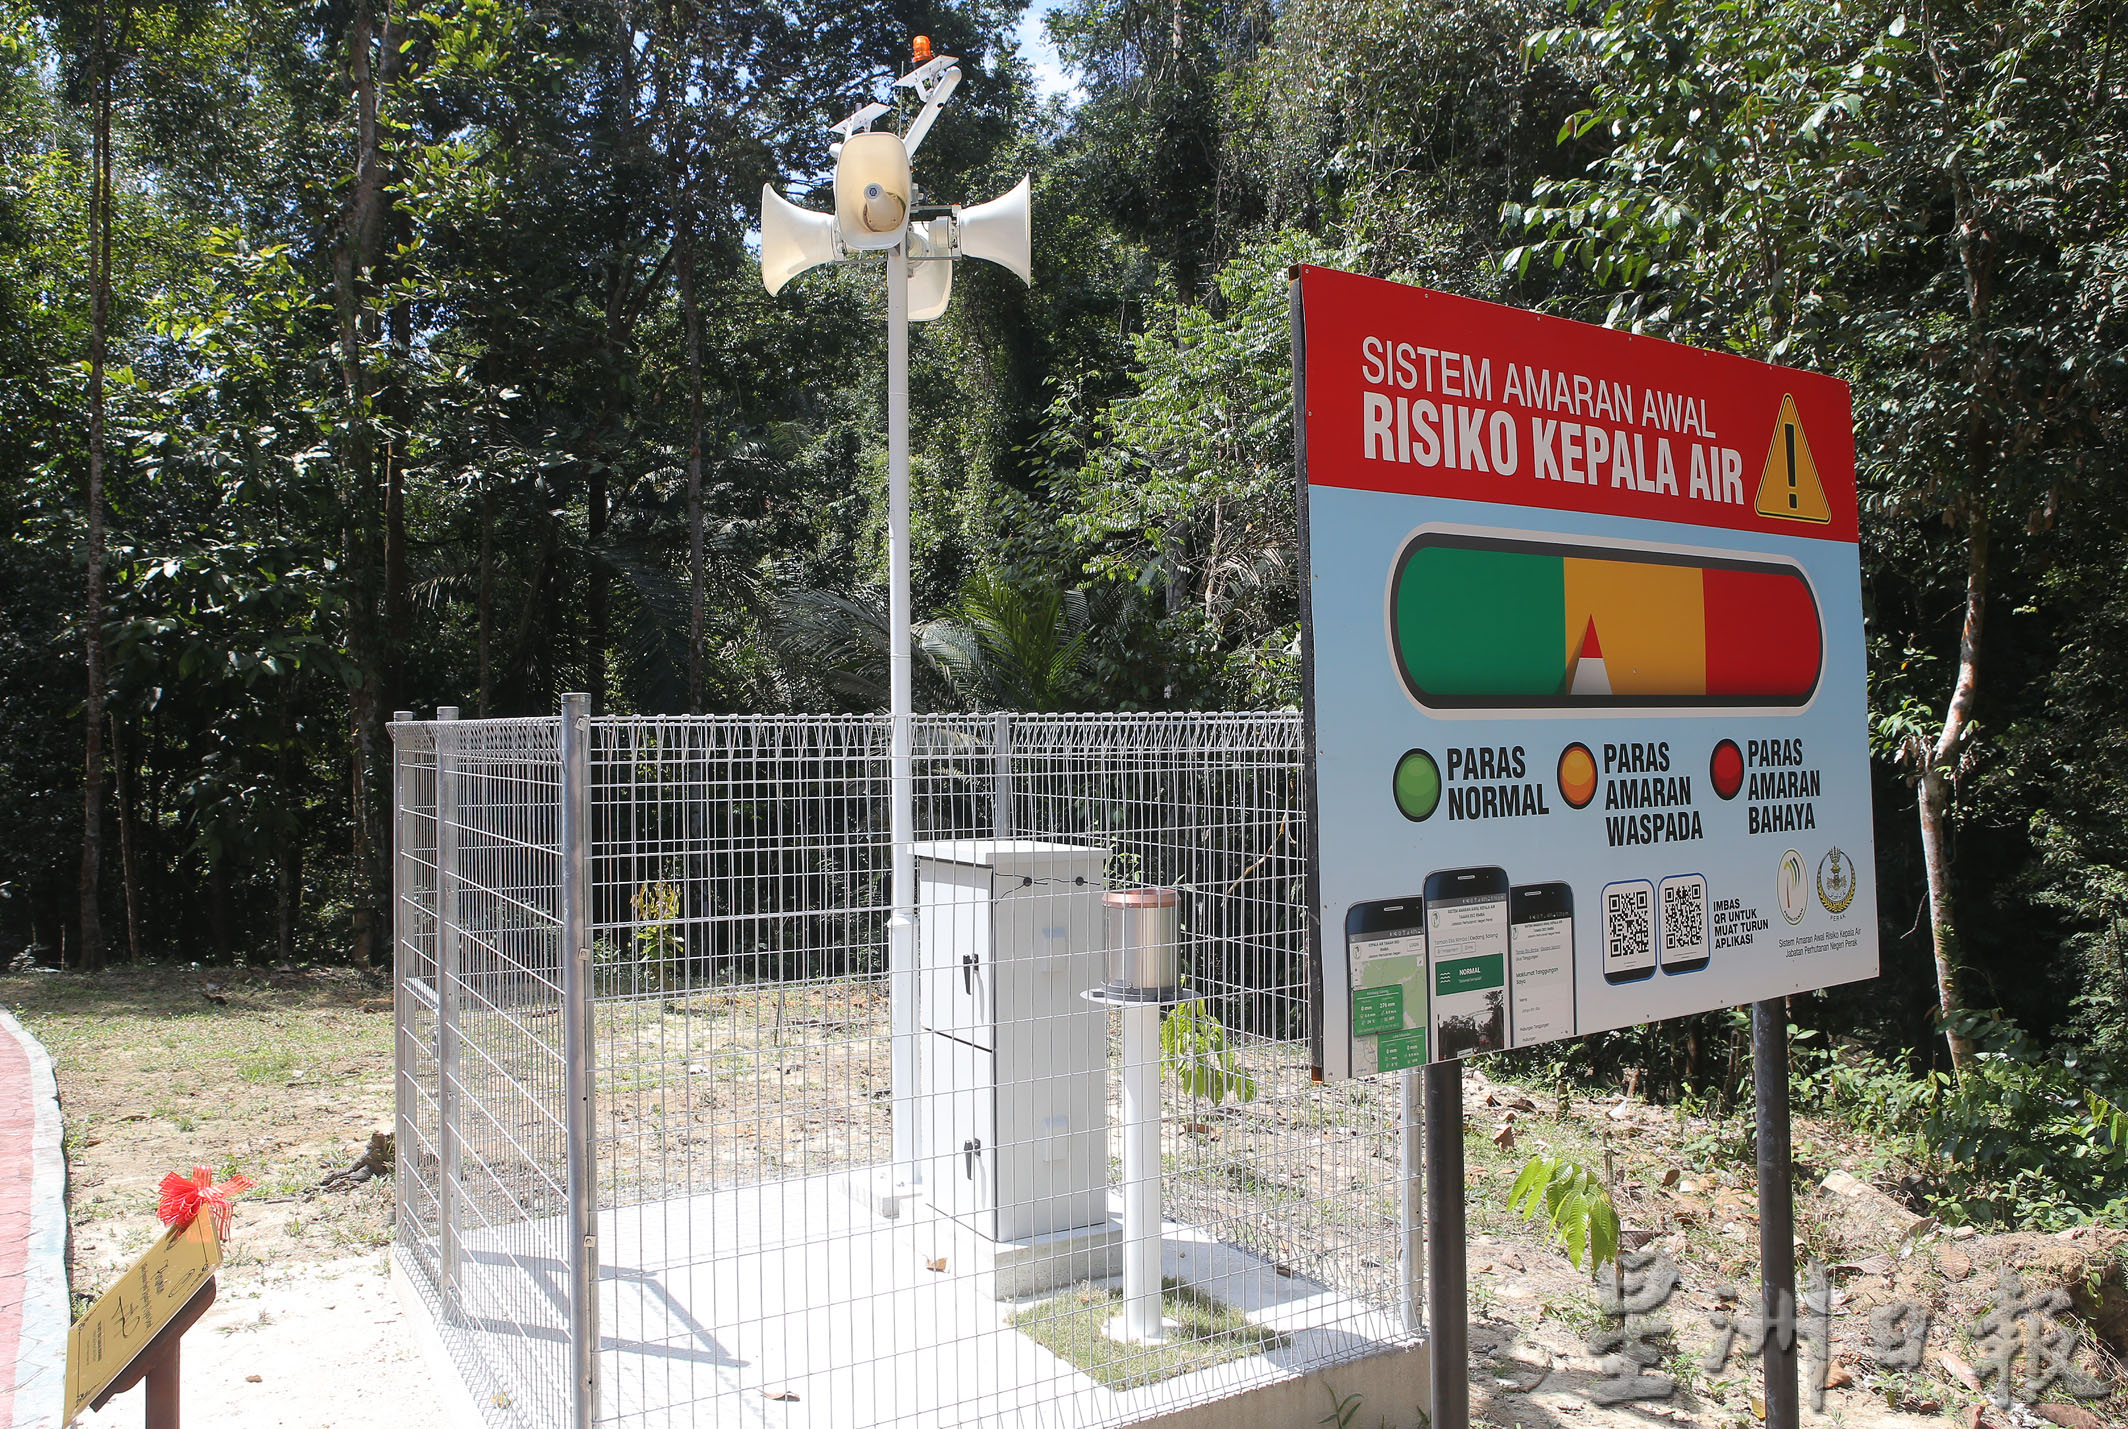 格列当赛翁生态森林公园瀑布 装置水位感应系统